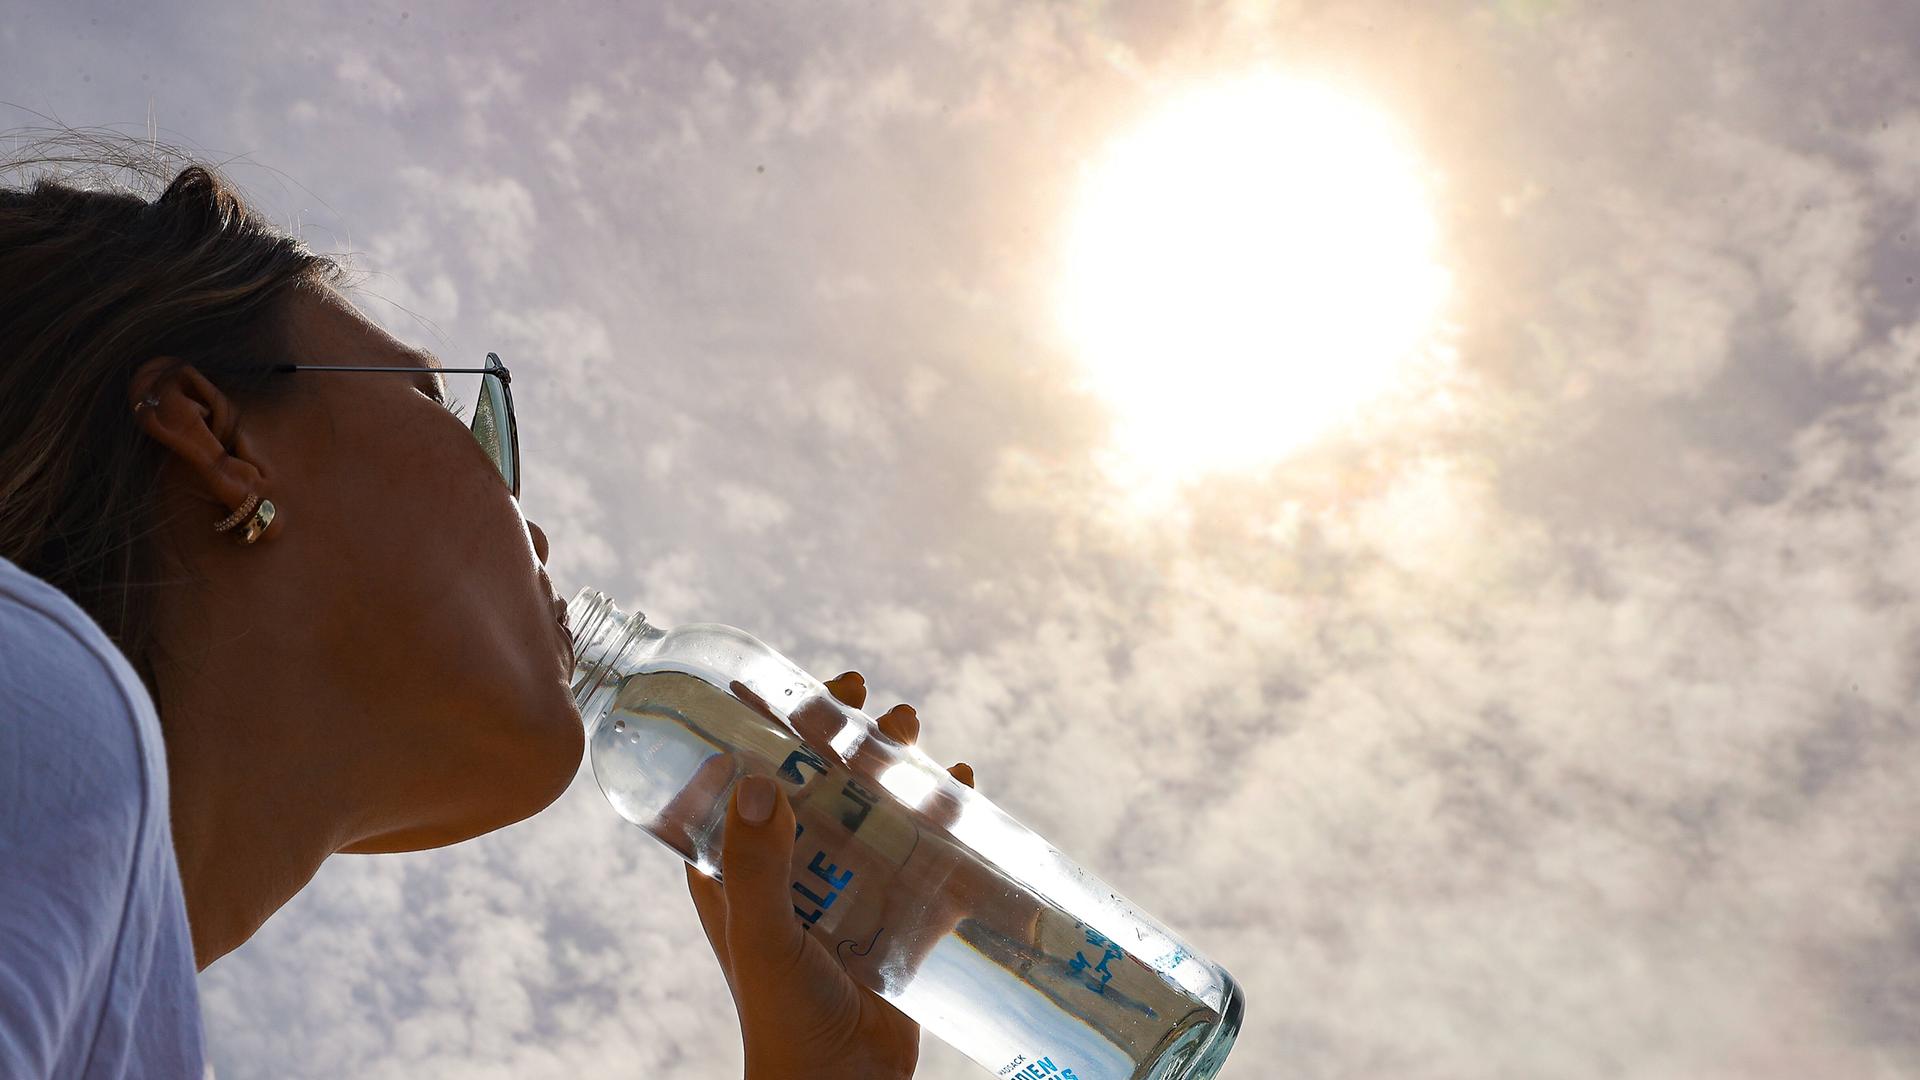 Eine Frau trinkt aus einer Flasche Wasser. Über ihr scheint die Sonne.